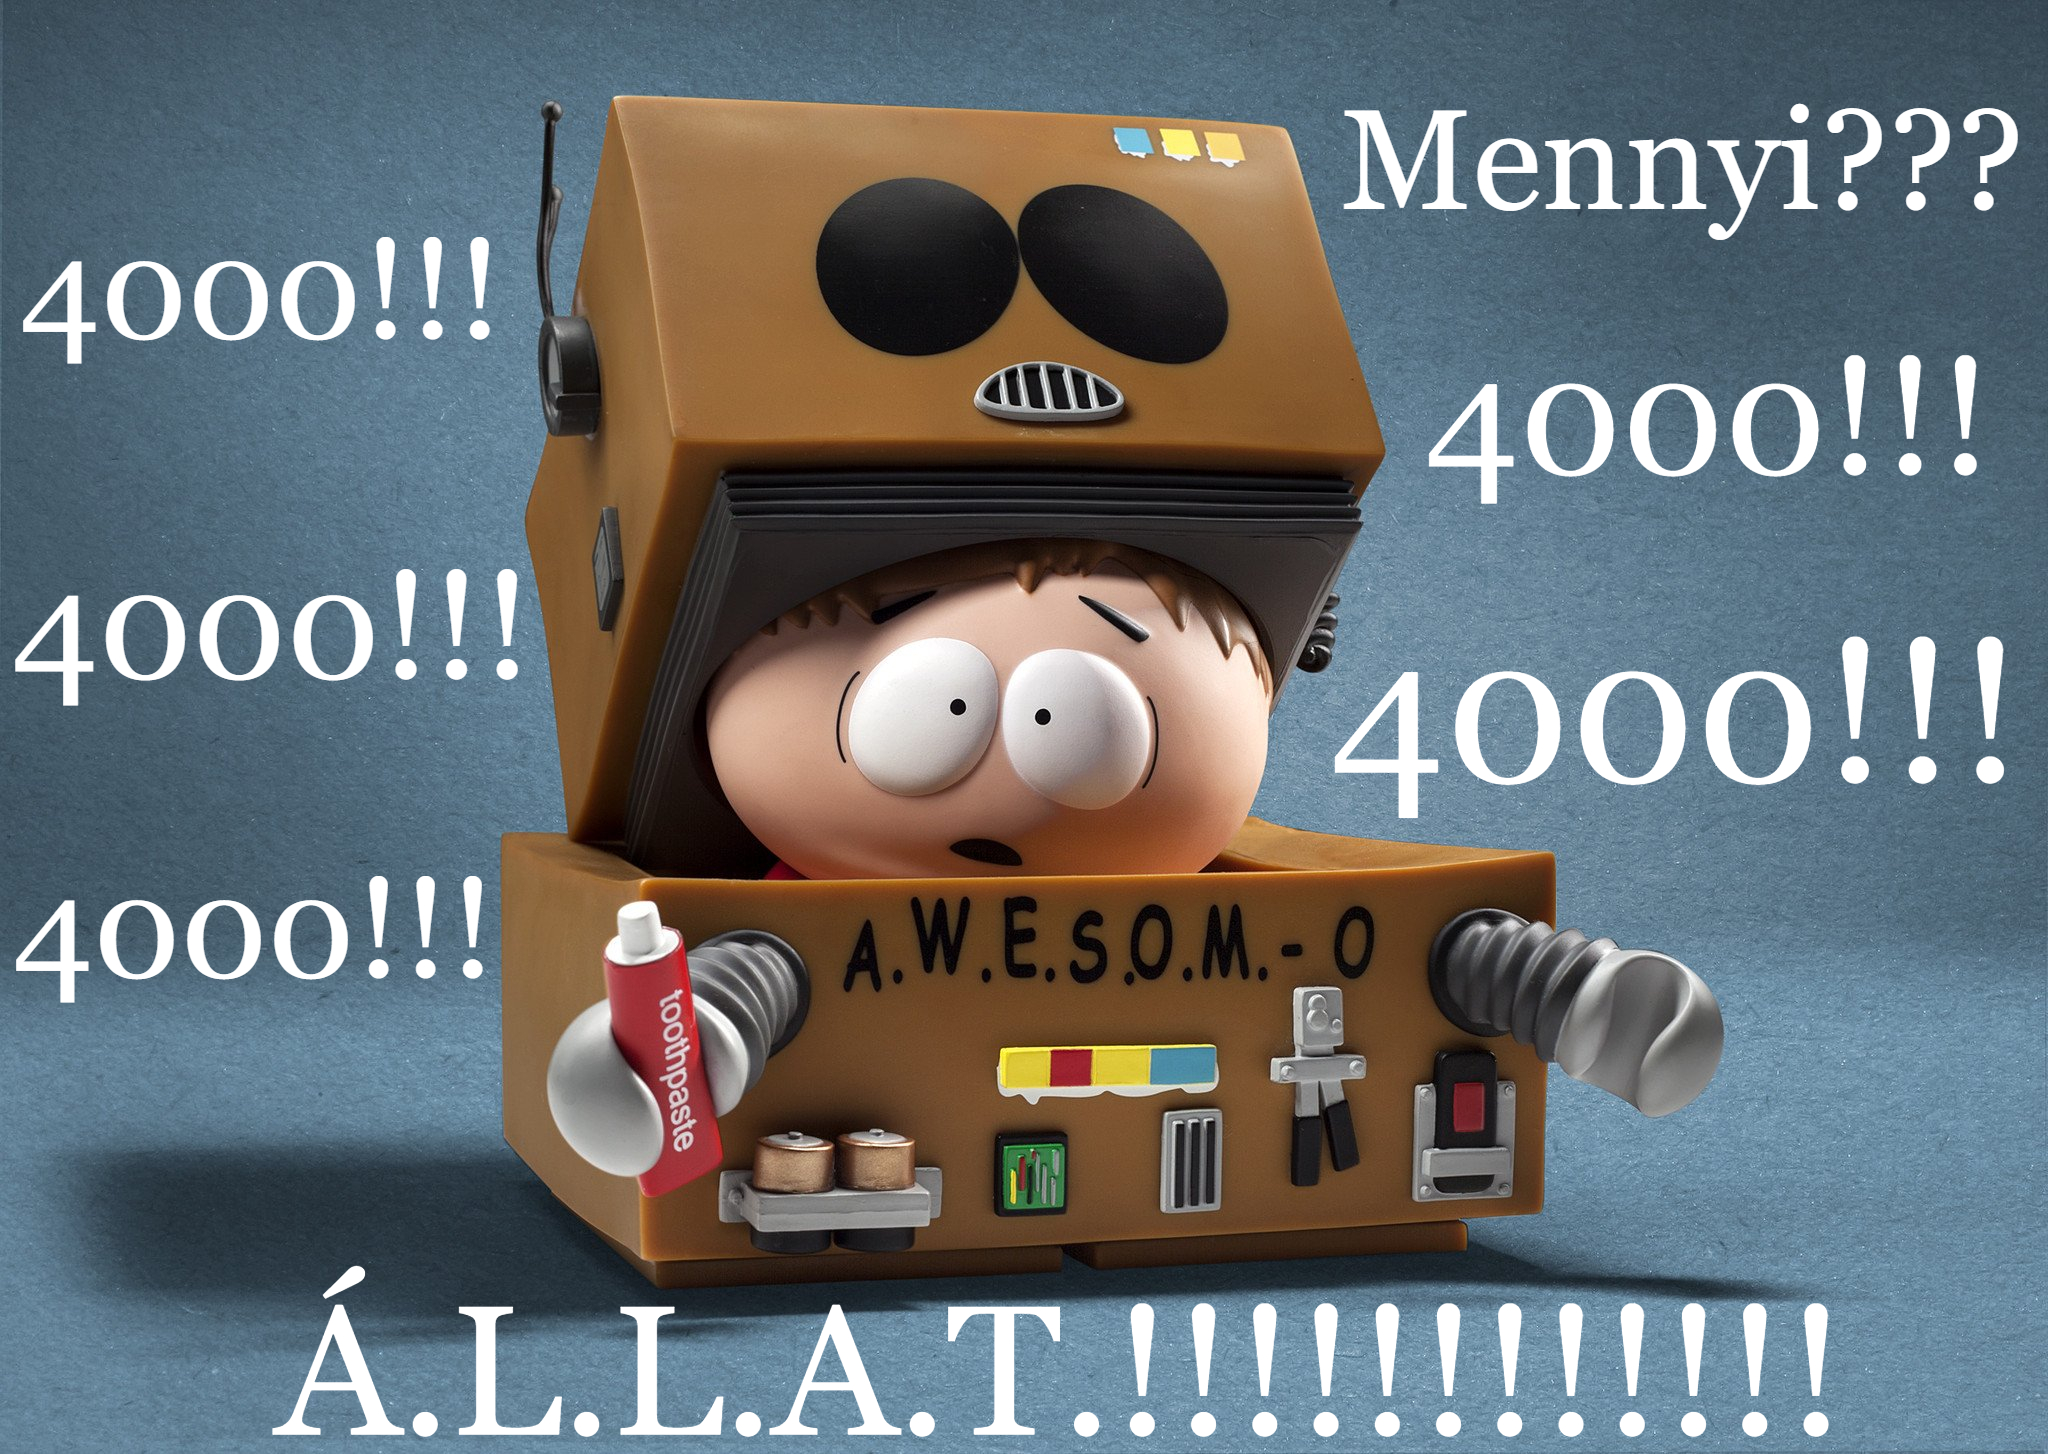 Á.L.L.A.T. 4000!!!!